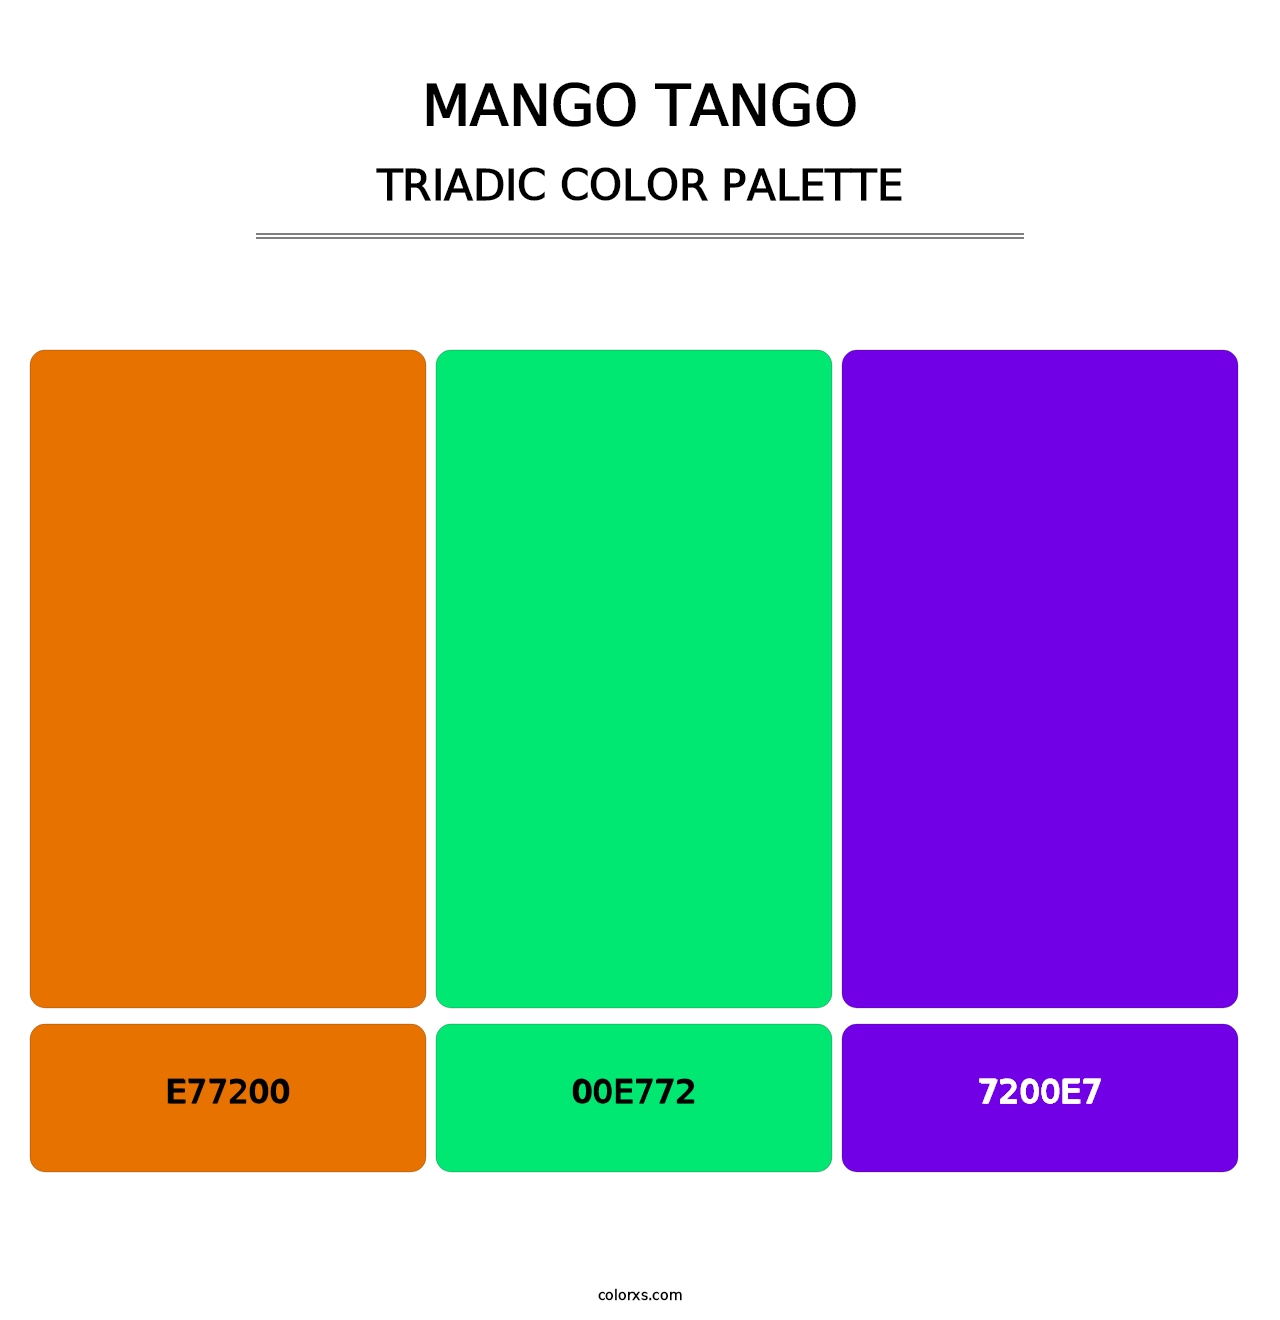 Mango Tango - Triadic Color Palette